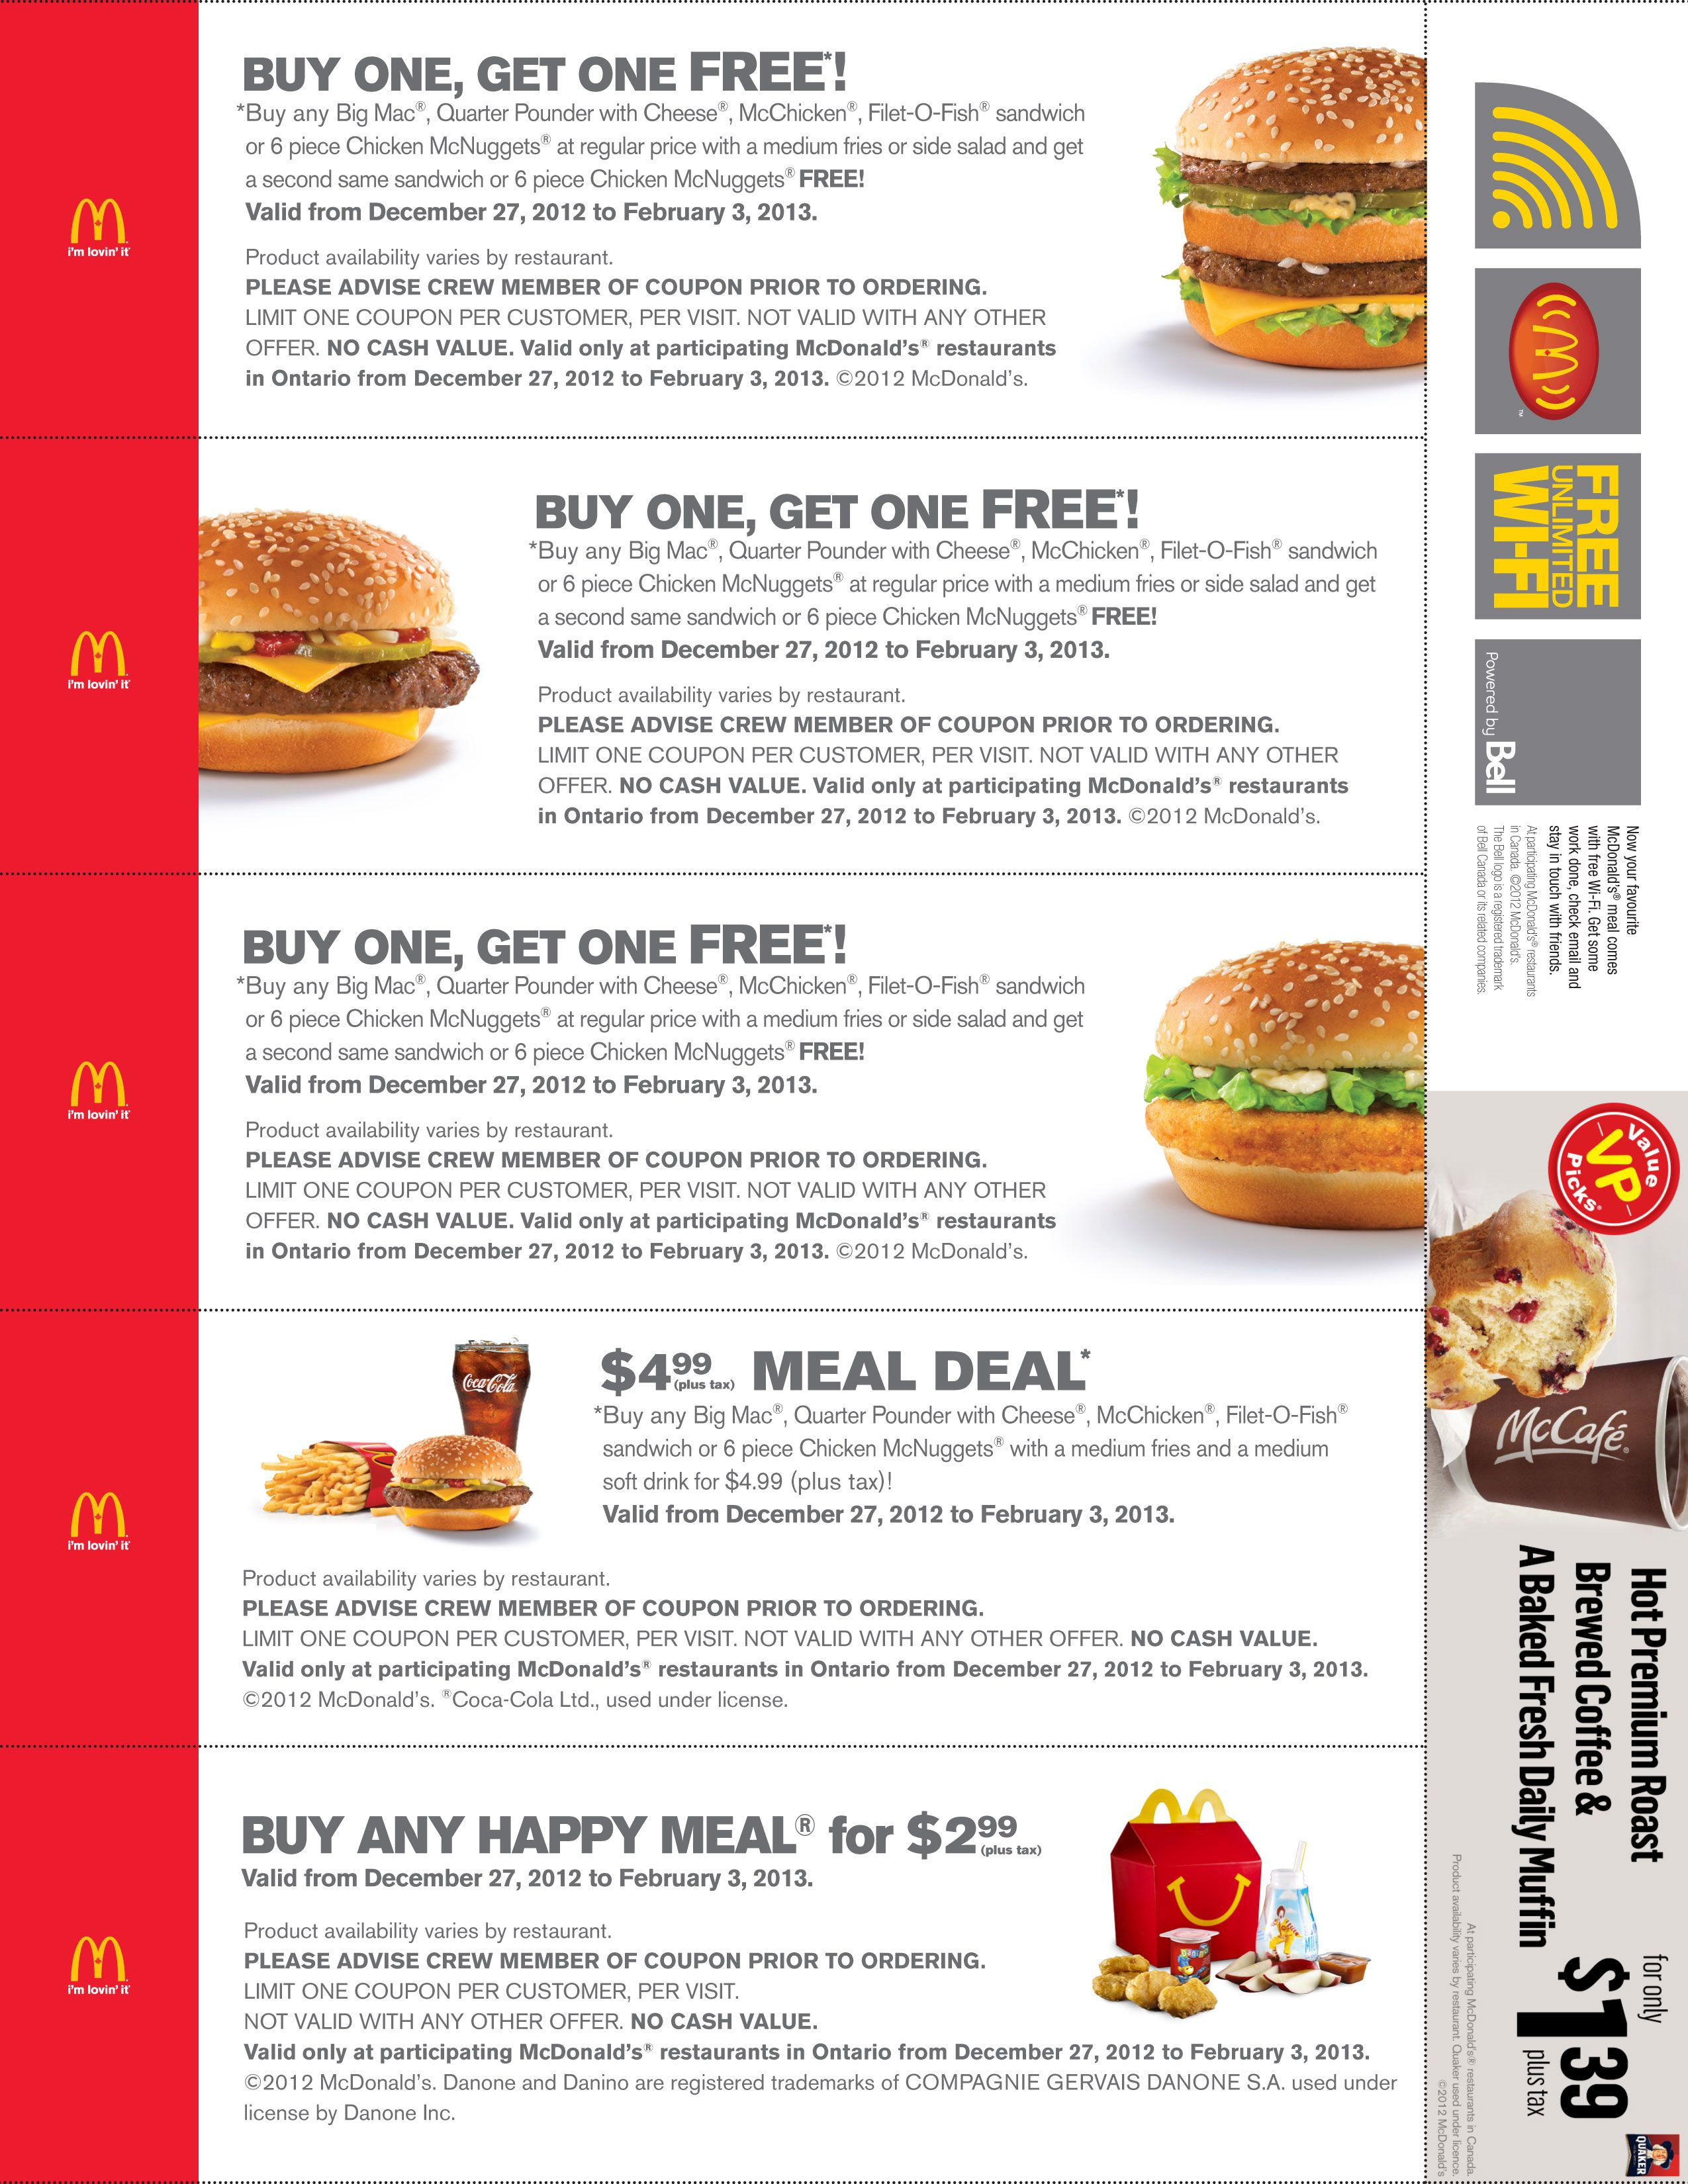 Printable Mcdonald Coupons 2014 | Stuff To Buy | Pinterest - Free Printable Mcdonalds Coupons Online